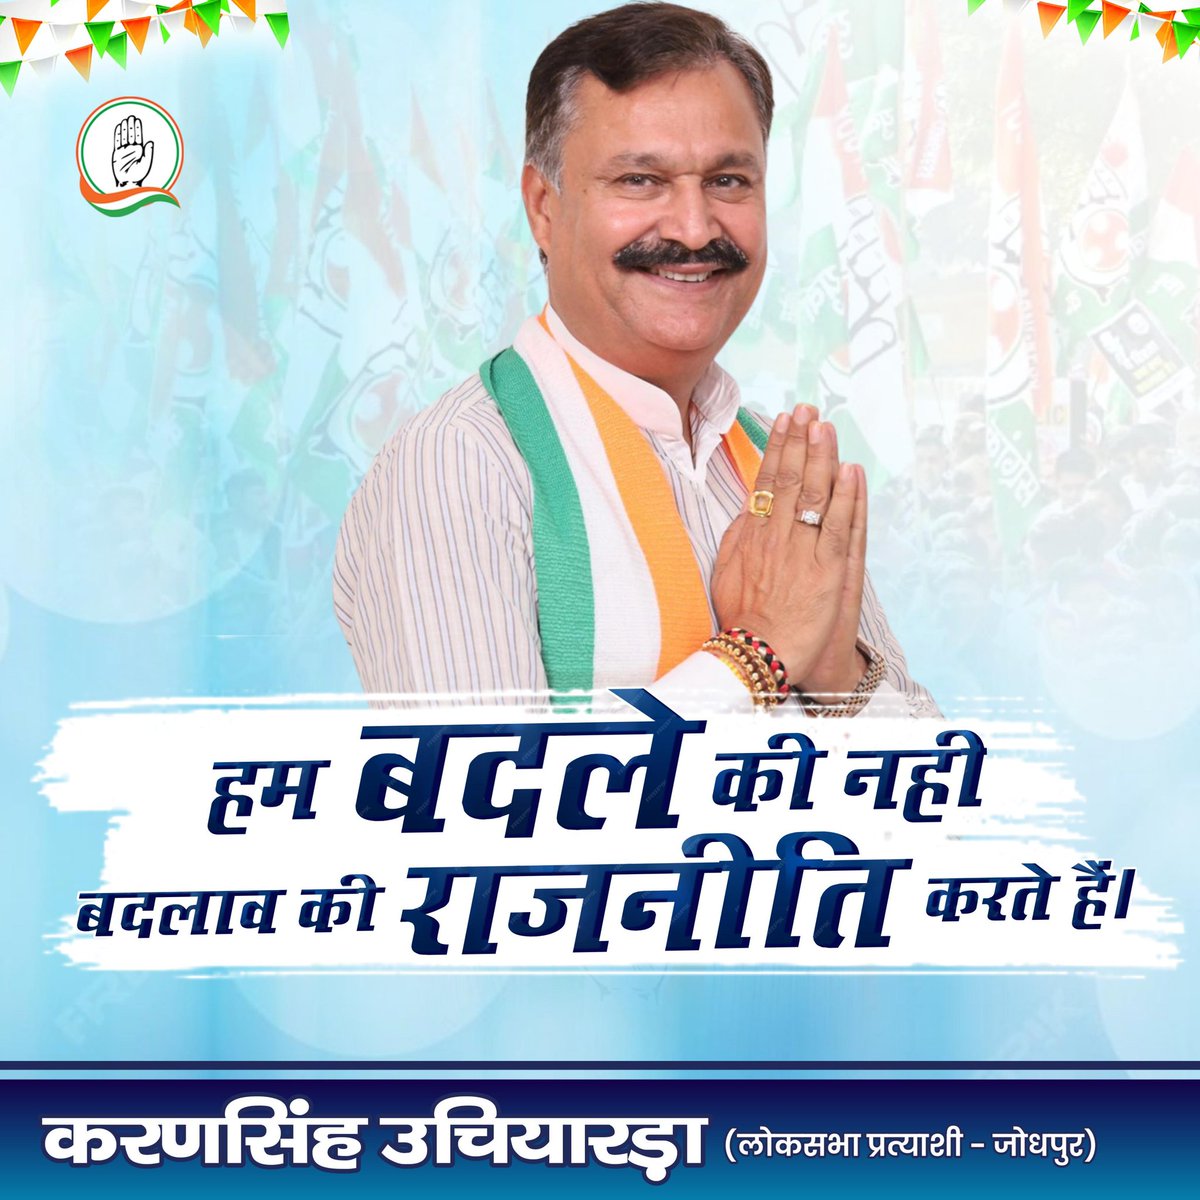 जोधपुर के नागरिकों ने करण सिंह को अपने नेता चुना है, क्योंकि उन्होंने नगर के विकास के लिए अपना पूरा ध्यान दिया है। #करणसिंह_साथे_जोधपुर